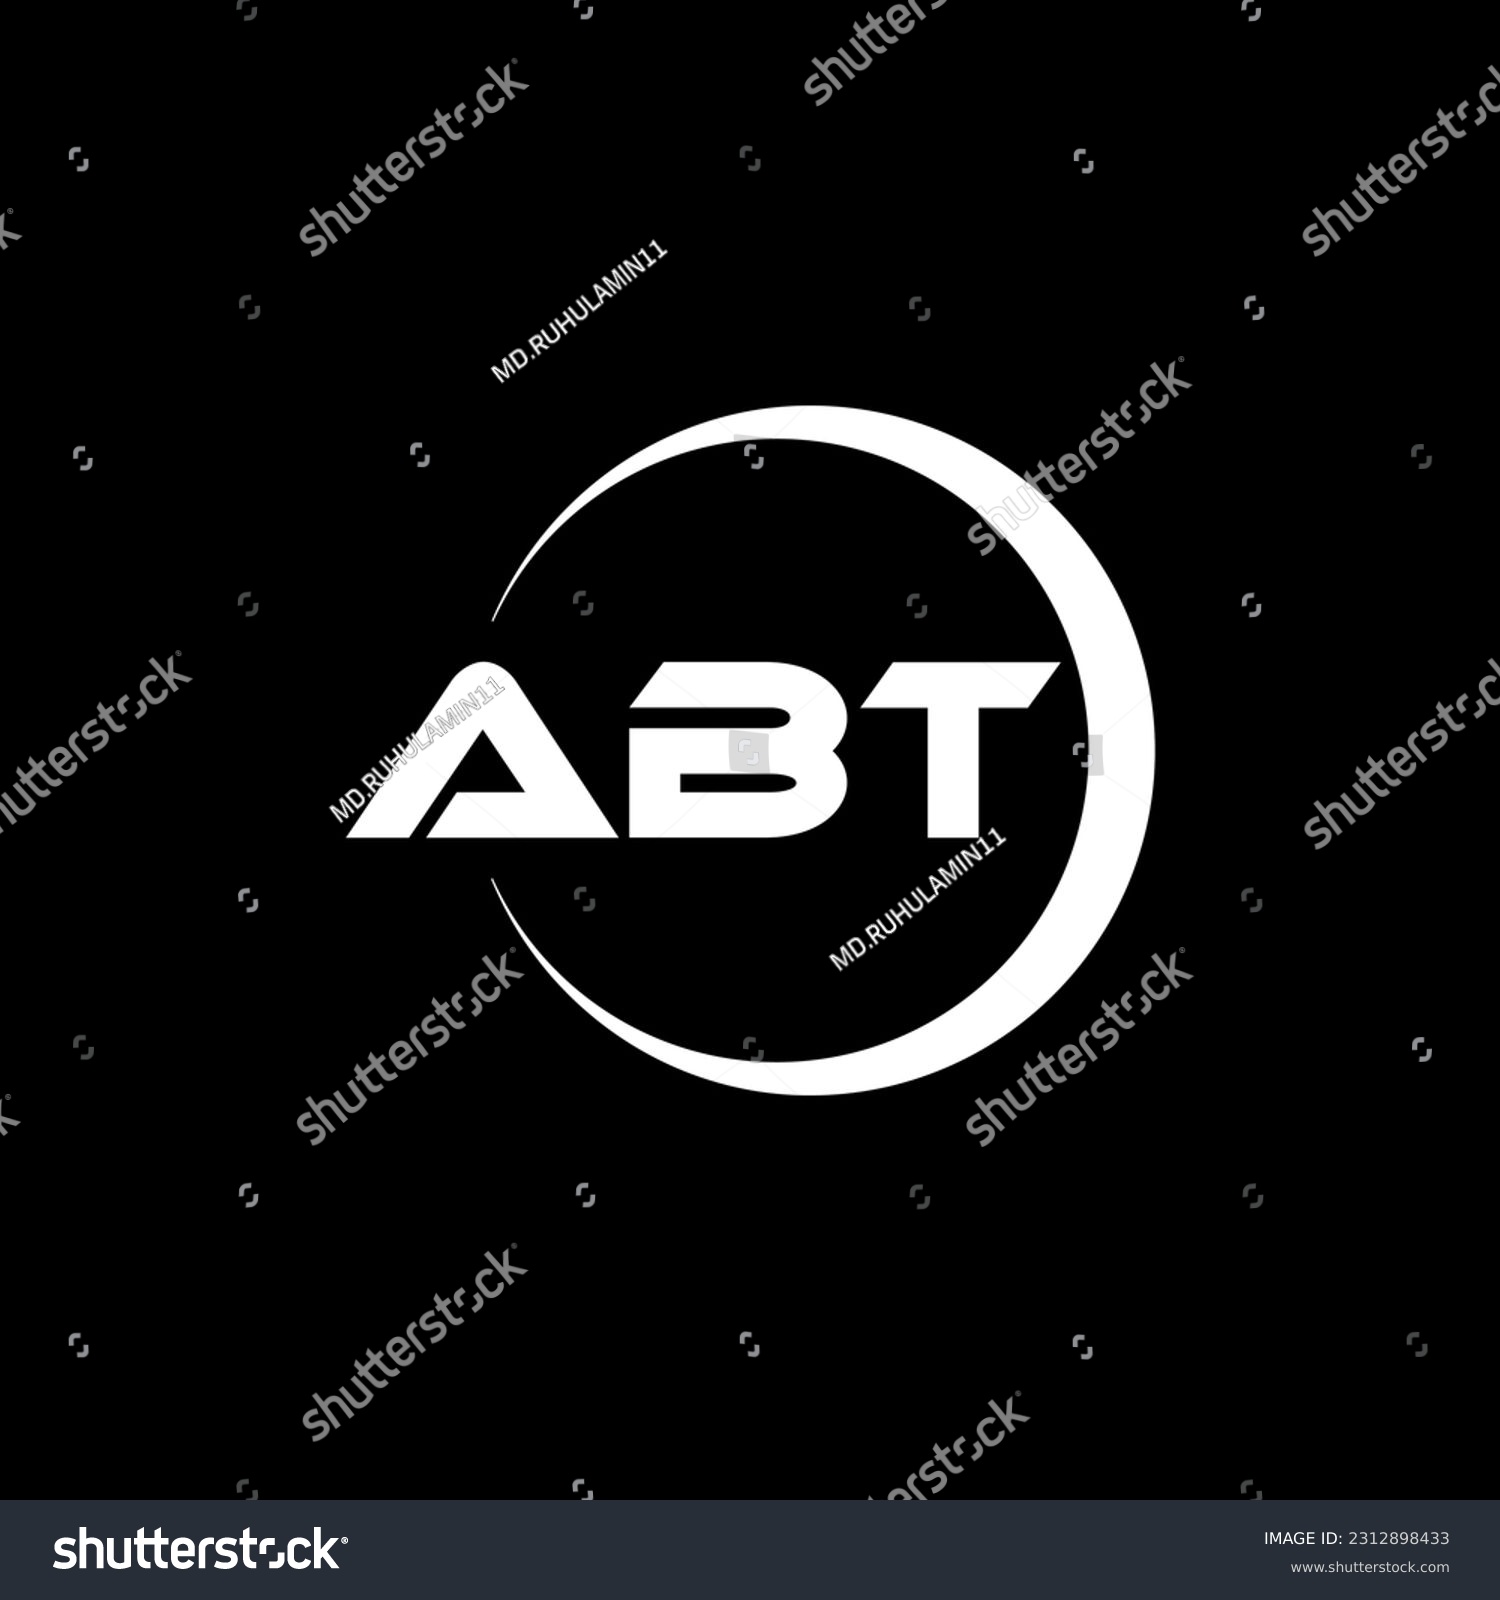 SVG of ABT letter logo design in illustration. Vector logo, calligraphy designs for logo, Poster, Invitation, etc. svg